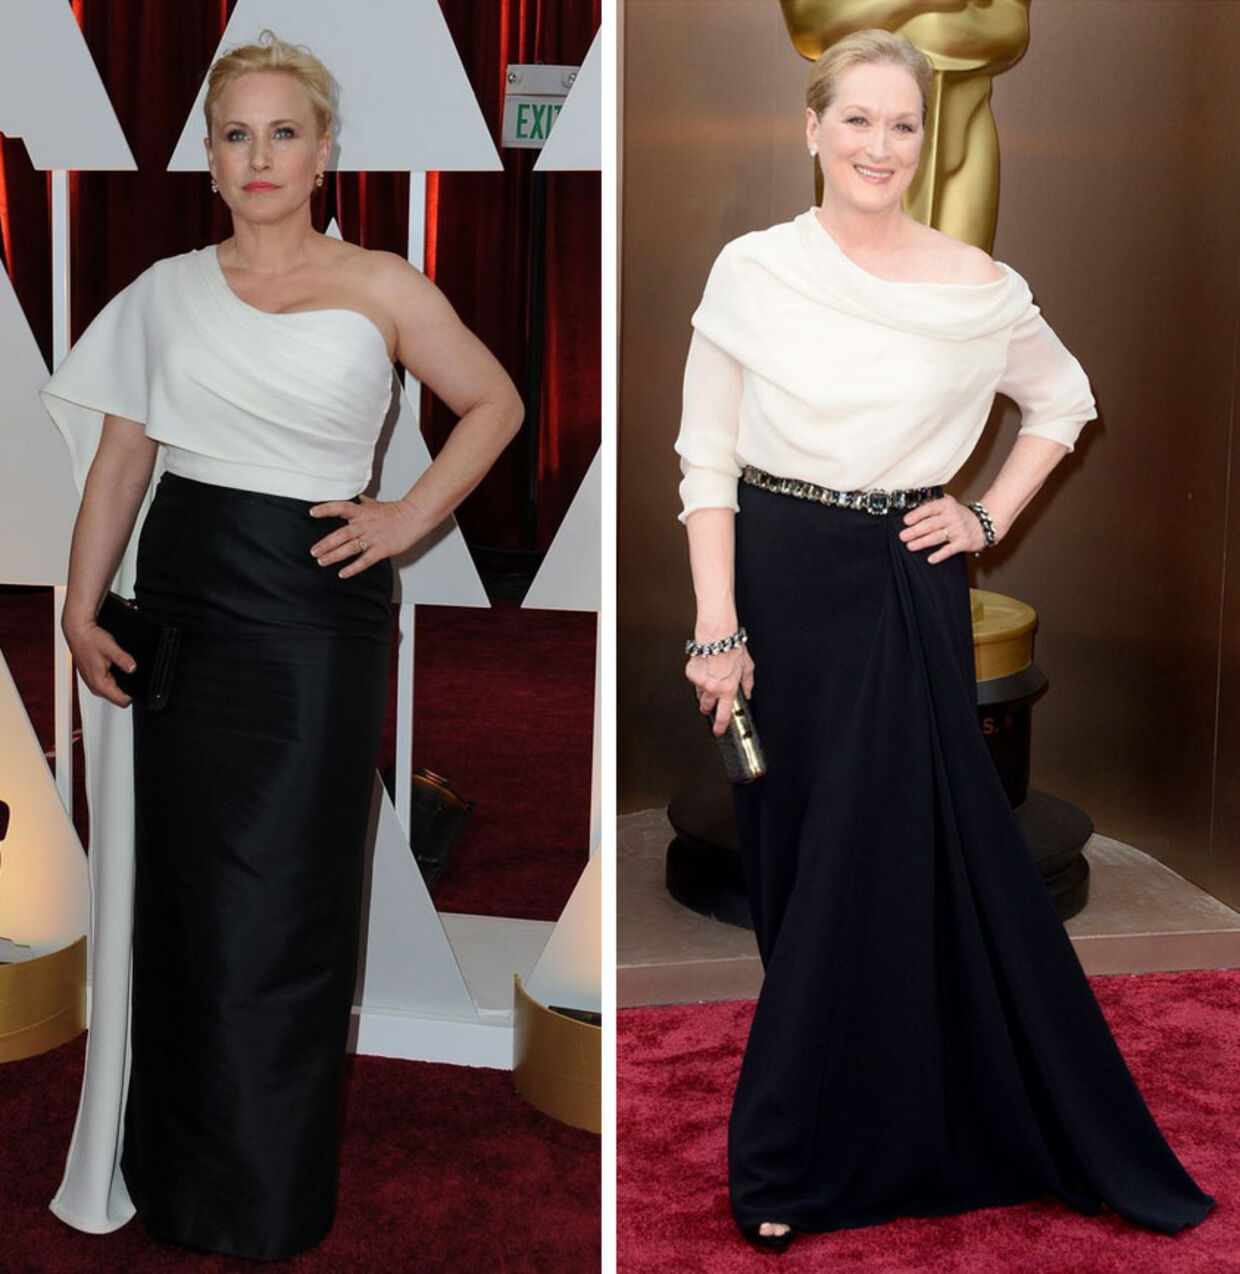 Patricia Arquette (tv) dukkede ved nattens Oscar-fest op i en kjole, der til forveksling lignede Meryl Streeps fra samme begivenhed i 2014.